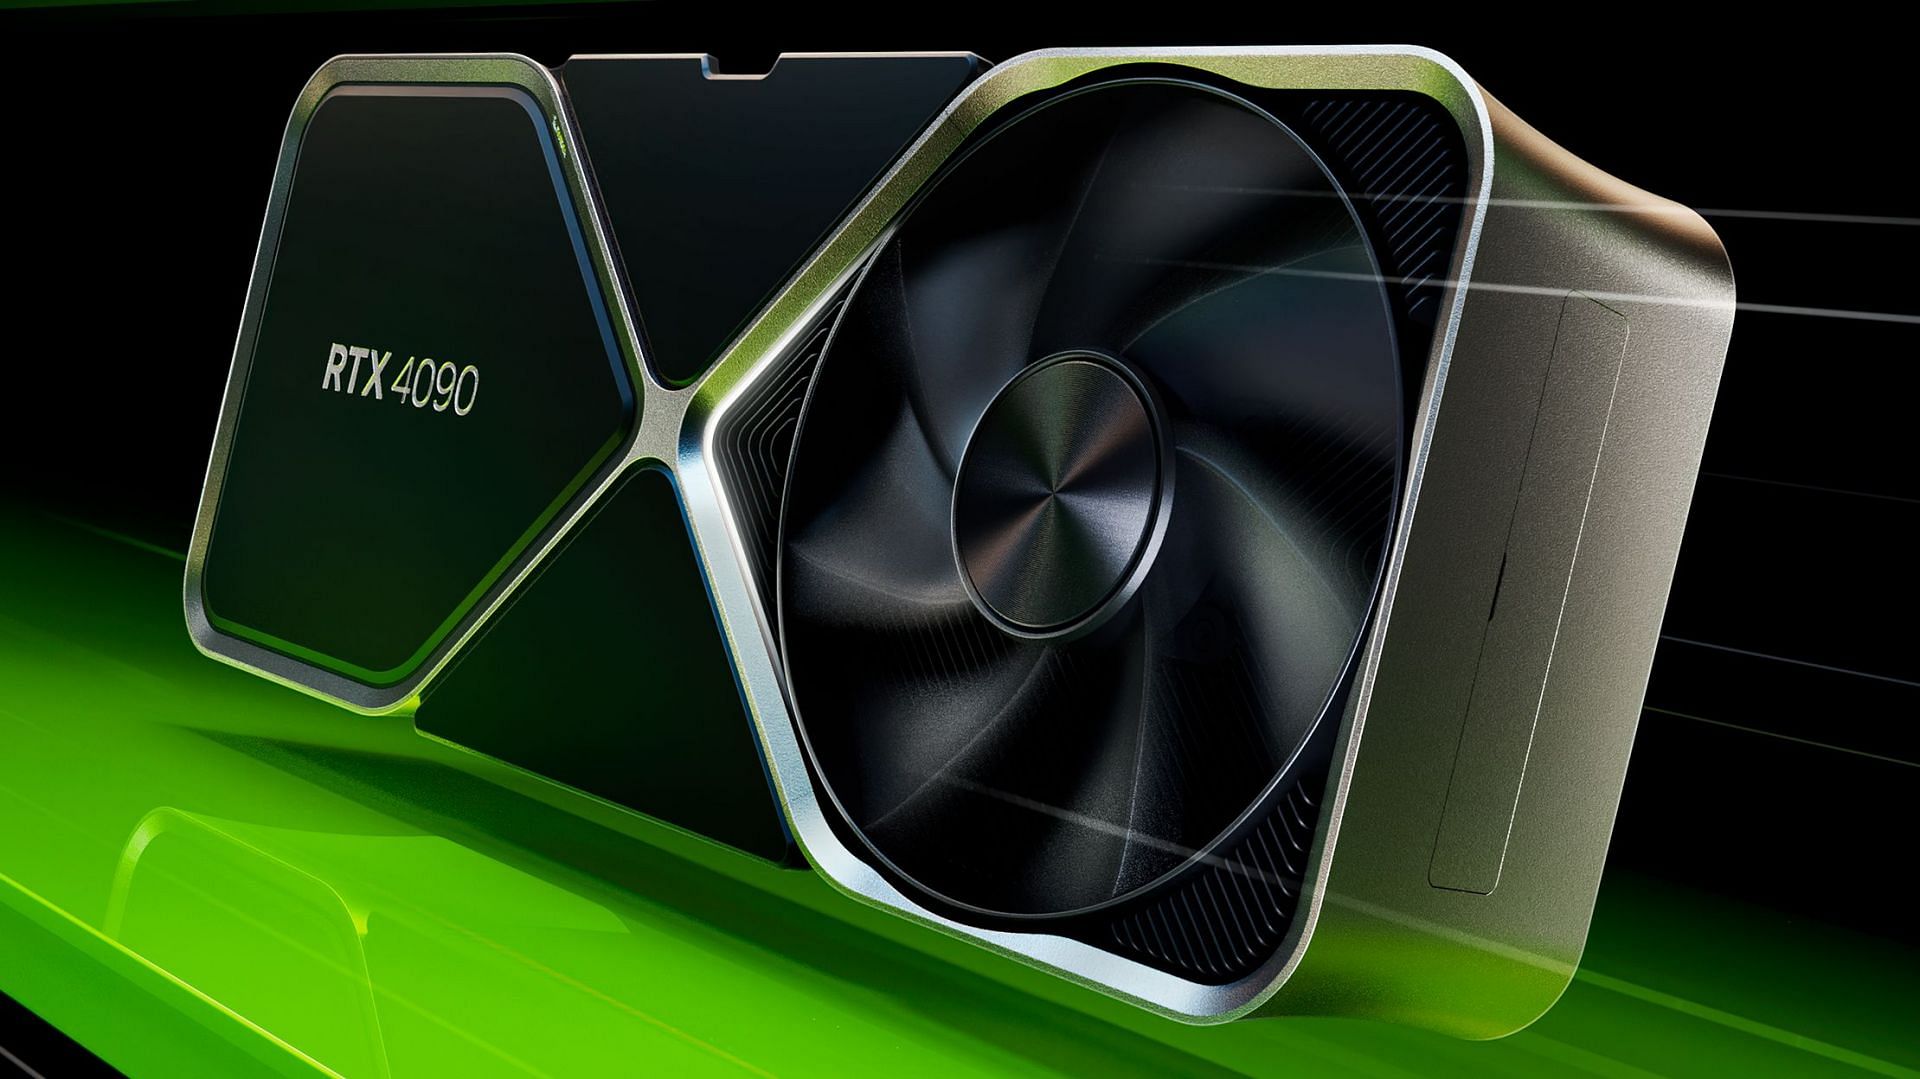 The Nvidia Geforce RTX 4090 (Image via Nvidia)